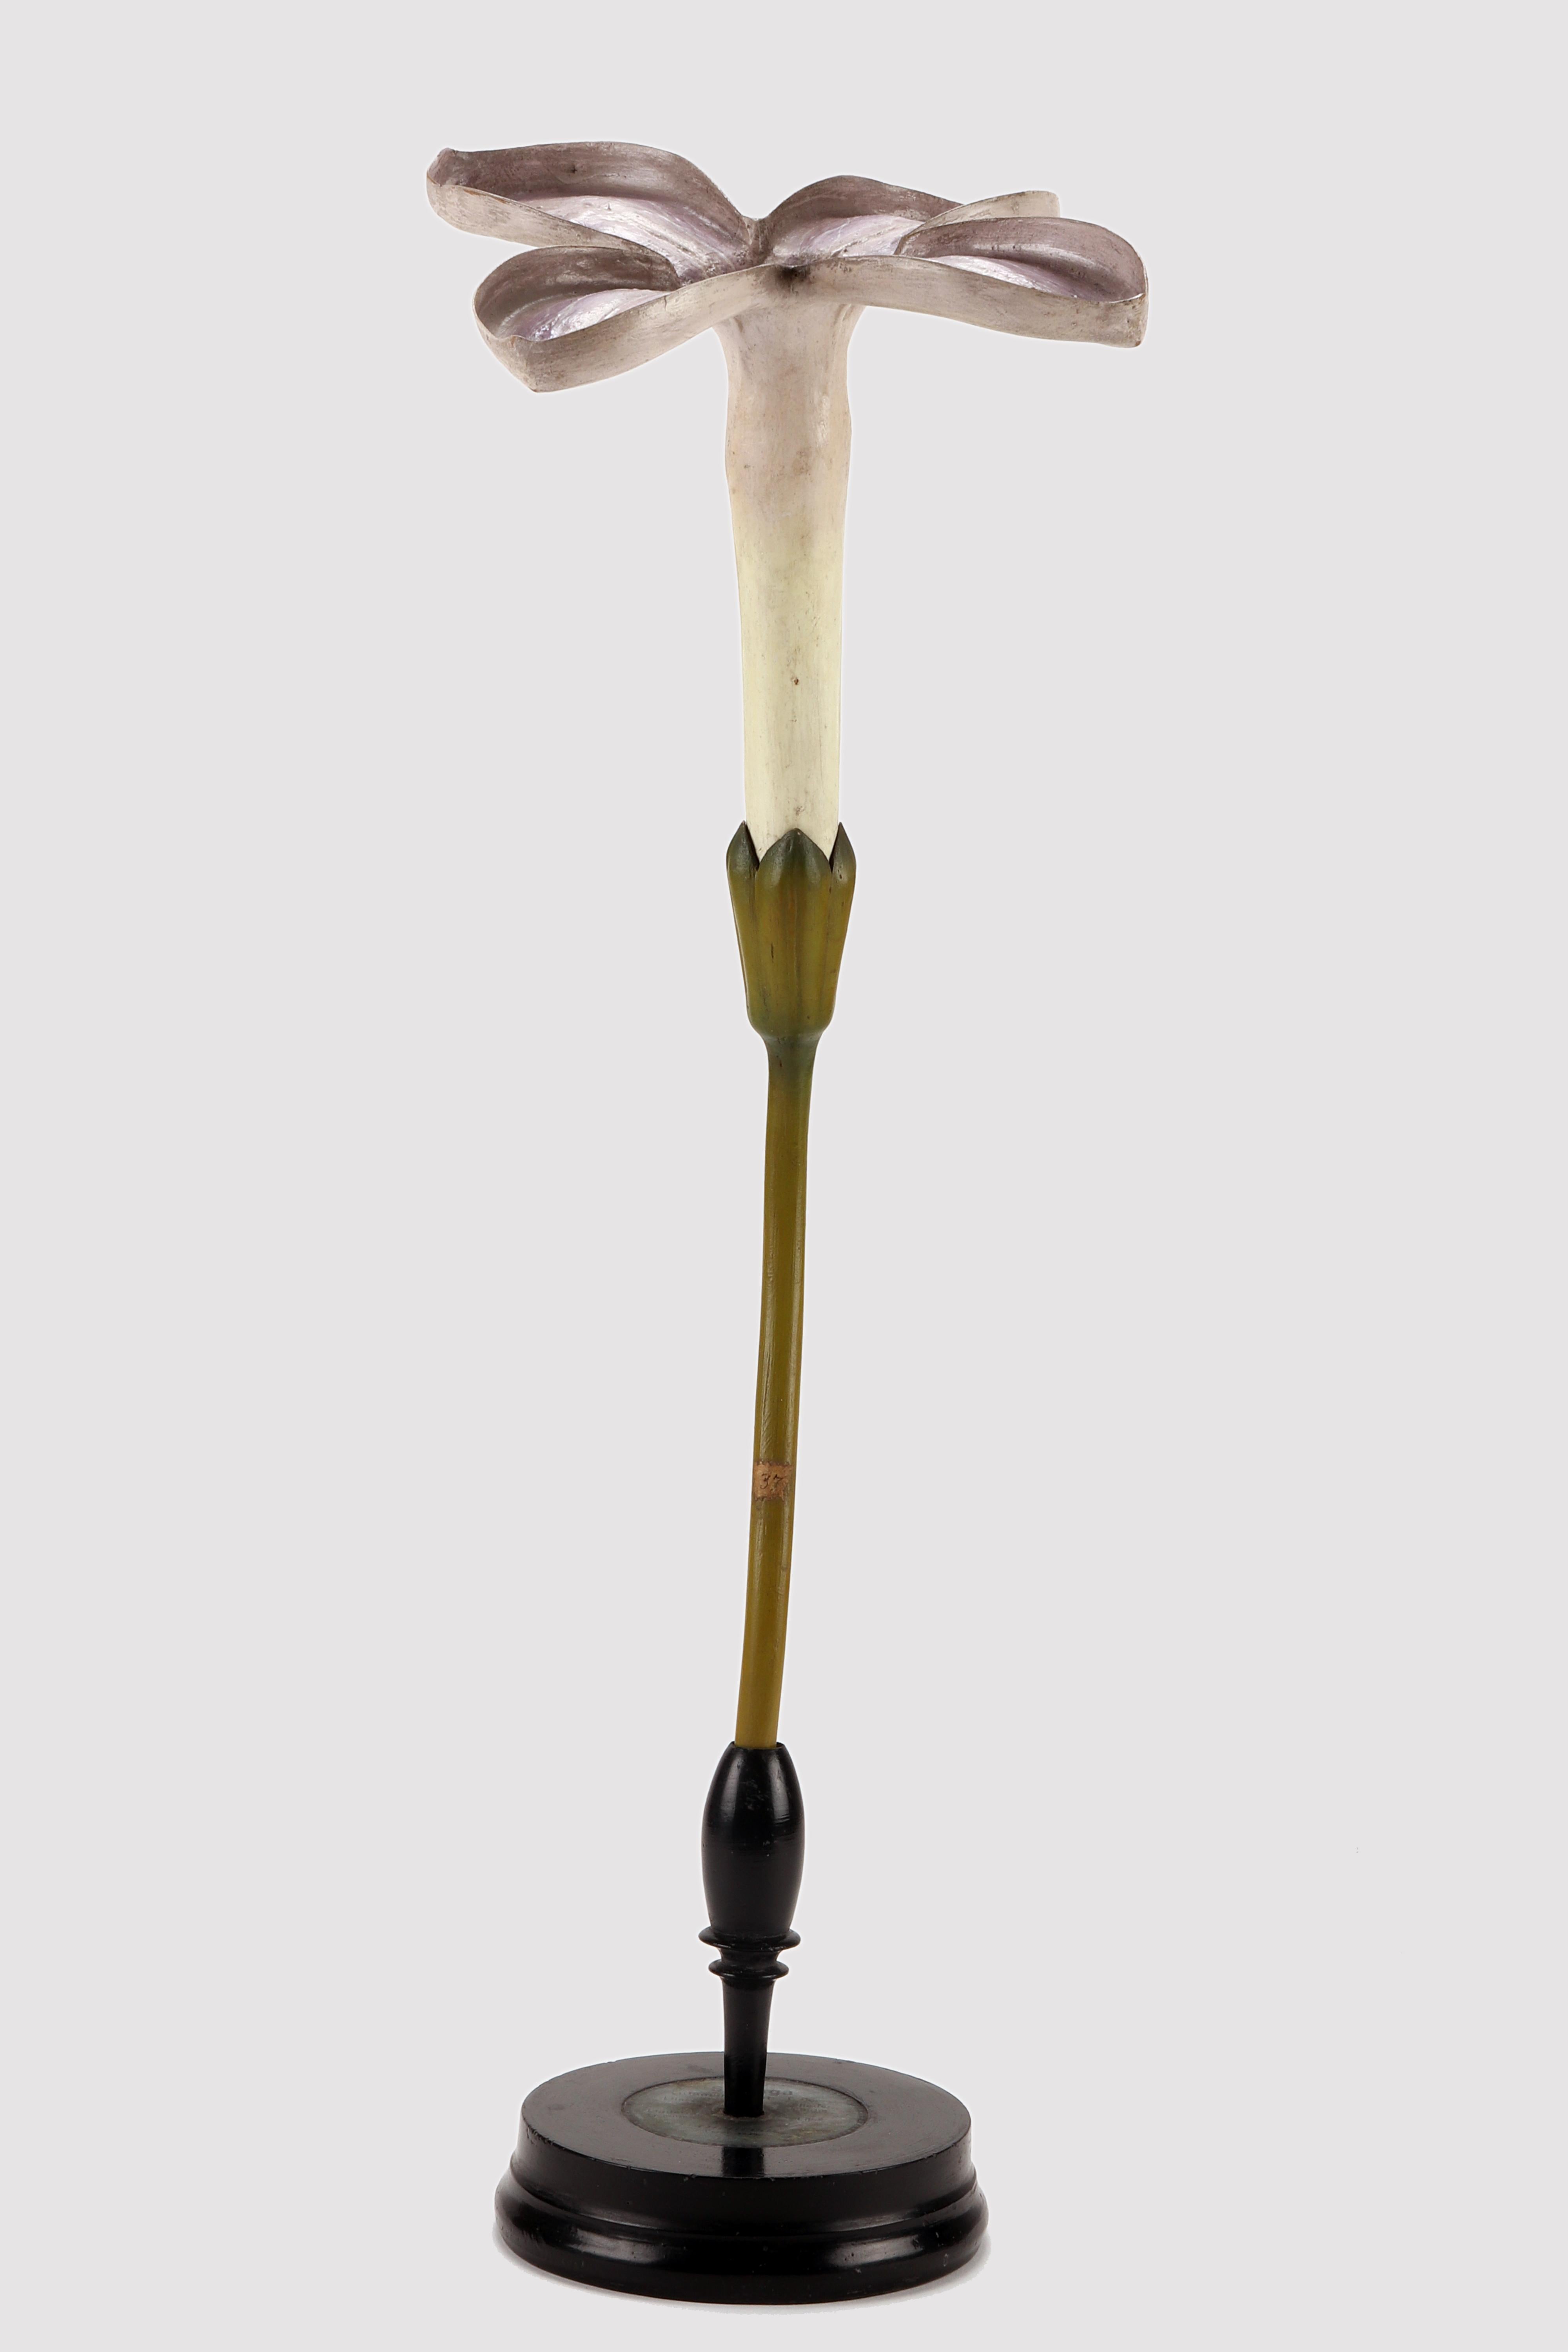 Un modèle botanique rare du Brendel, Syringa vulgaris N. 37 (Uleaceae). La base ronde en bois ébonisé accueille le modèle botanique qui révèle la fleur du Lilas. Brendel, Berlin Allemagne, vers 1890.